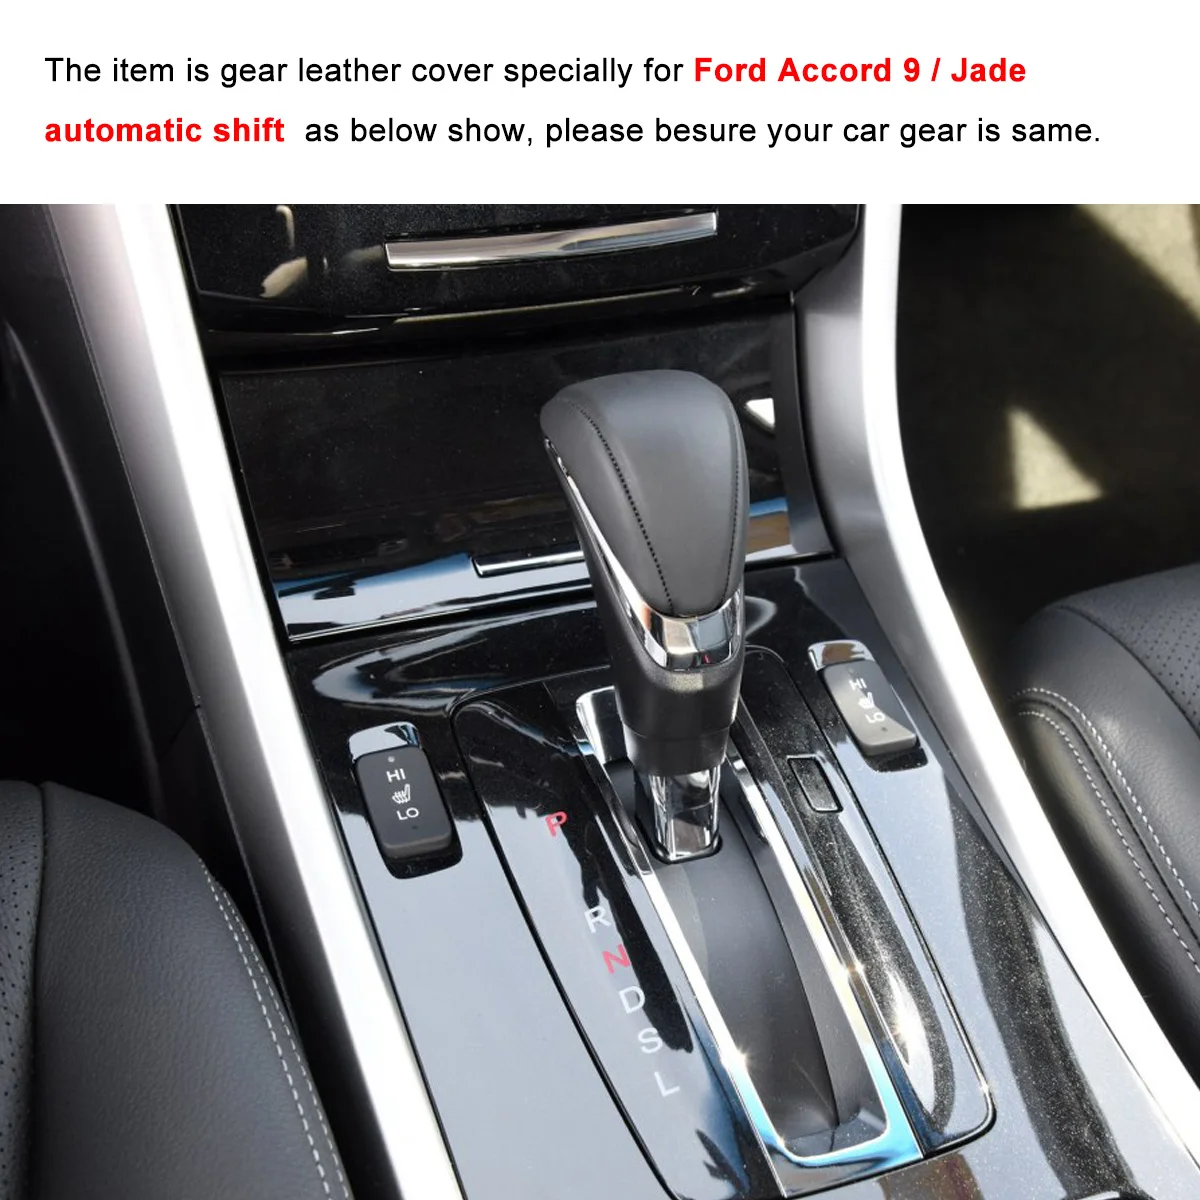 Чехол для Honda ACCORD 9 JADE с автоматической передачей Ручное шитье DIY авто украшение автомобиля Стайлинг авто аксессуары